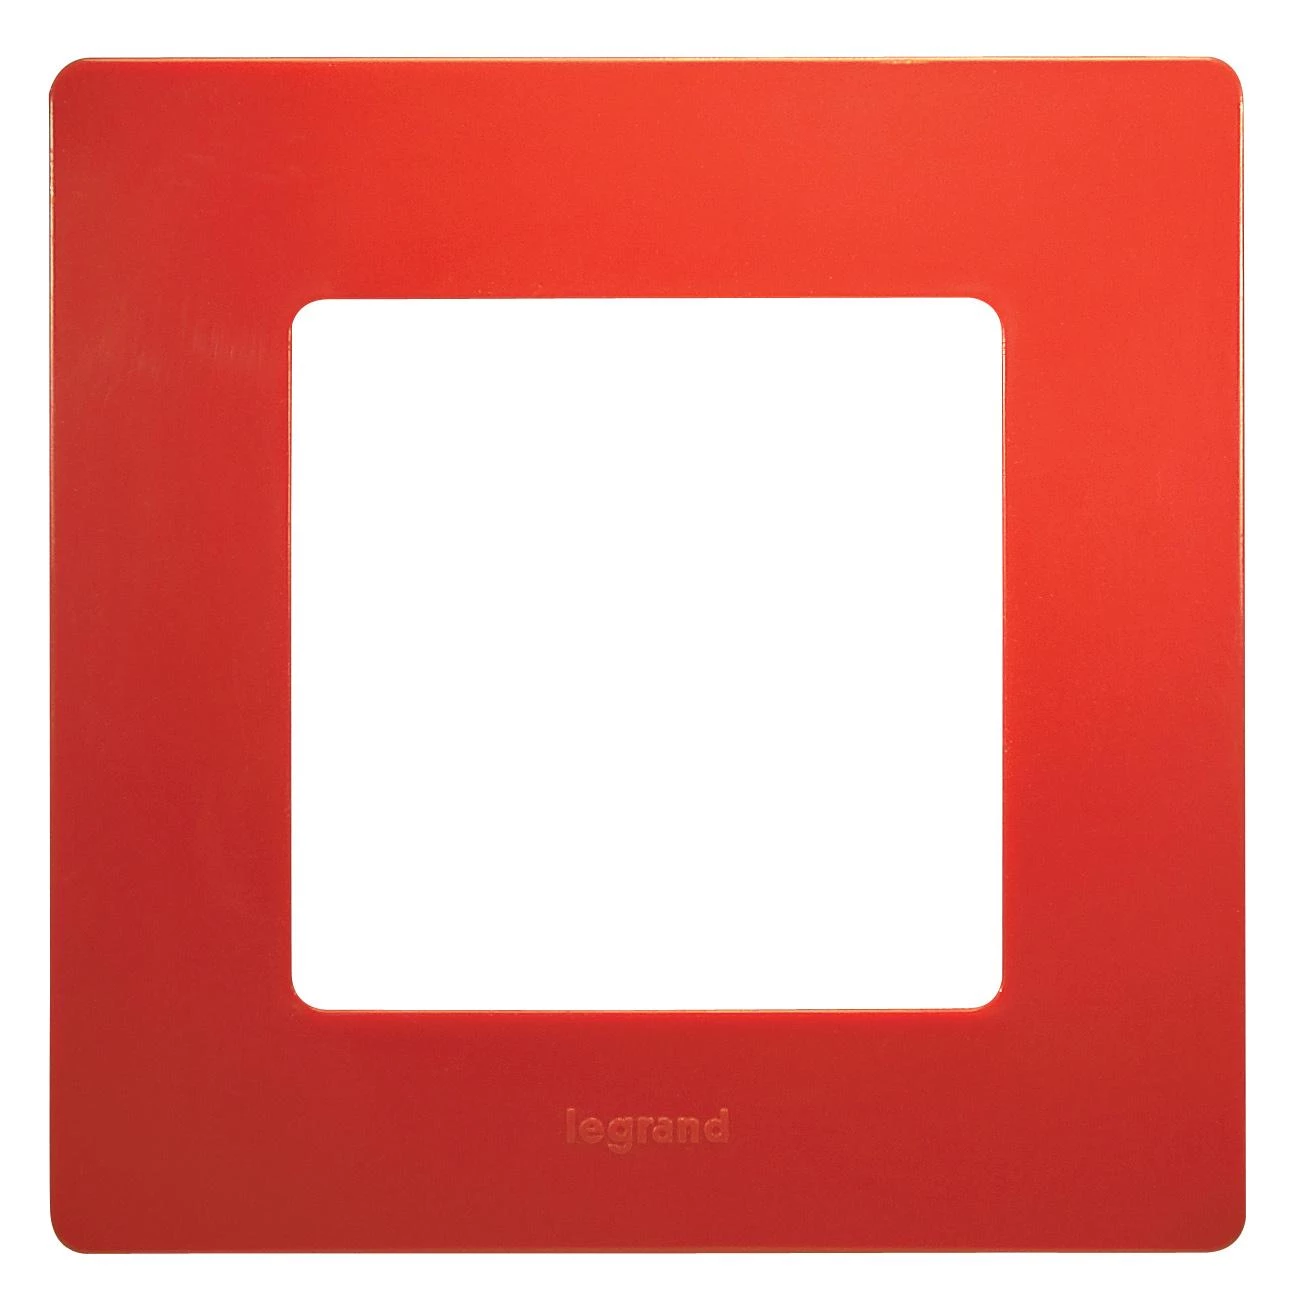  артикул 672531 название Рамка 1-ая (одинарная), цвет Красный, Etika